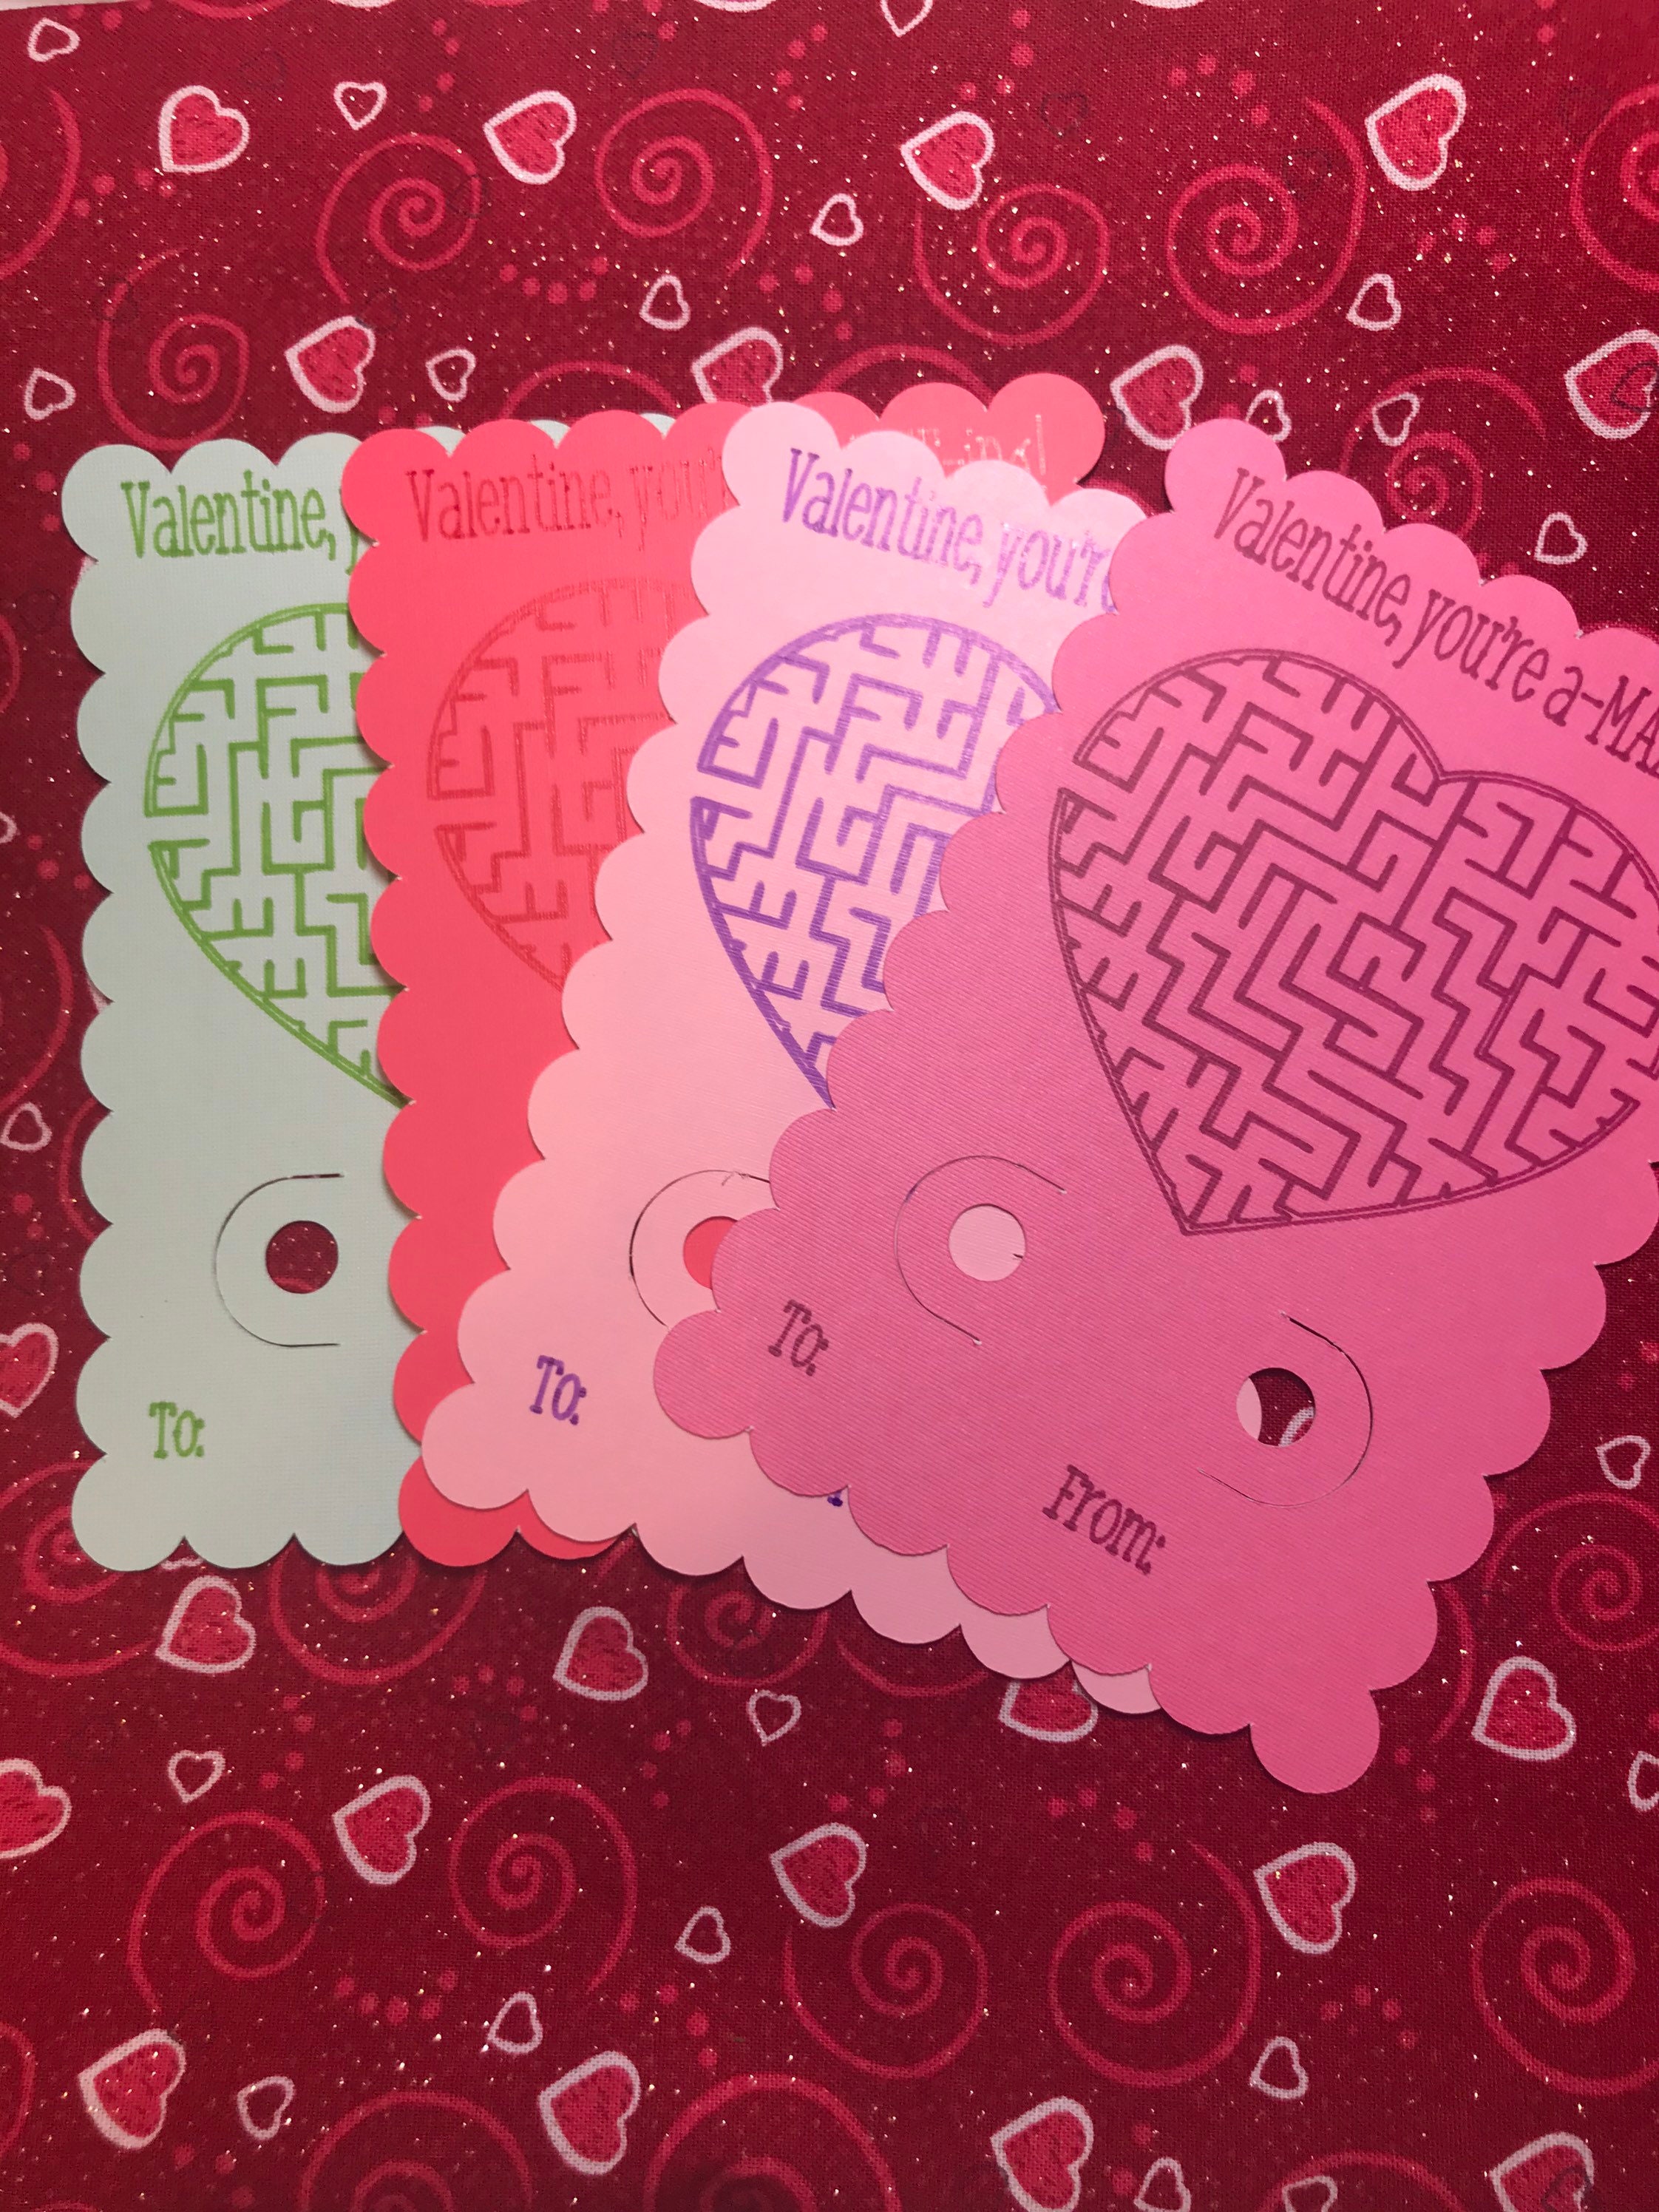 Valentine You're AMAZEING Card Kids Valentine Card Etsy